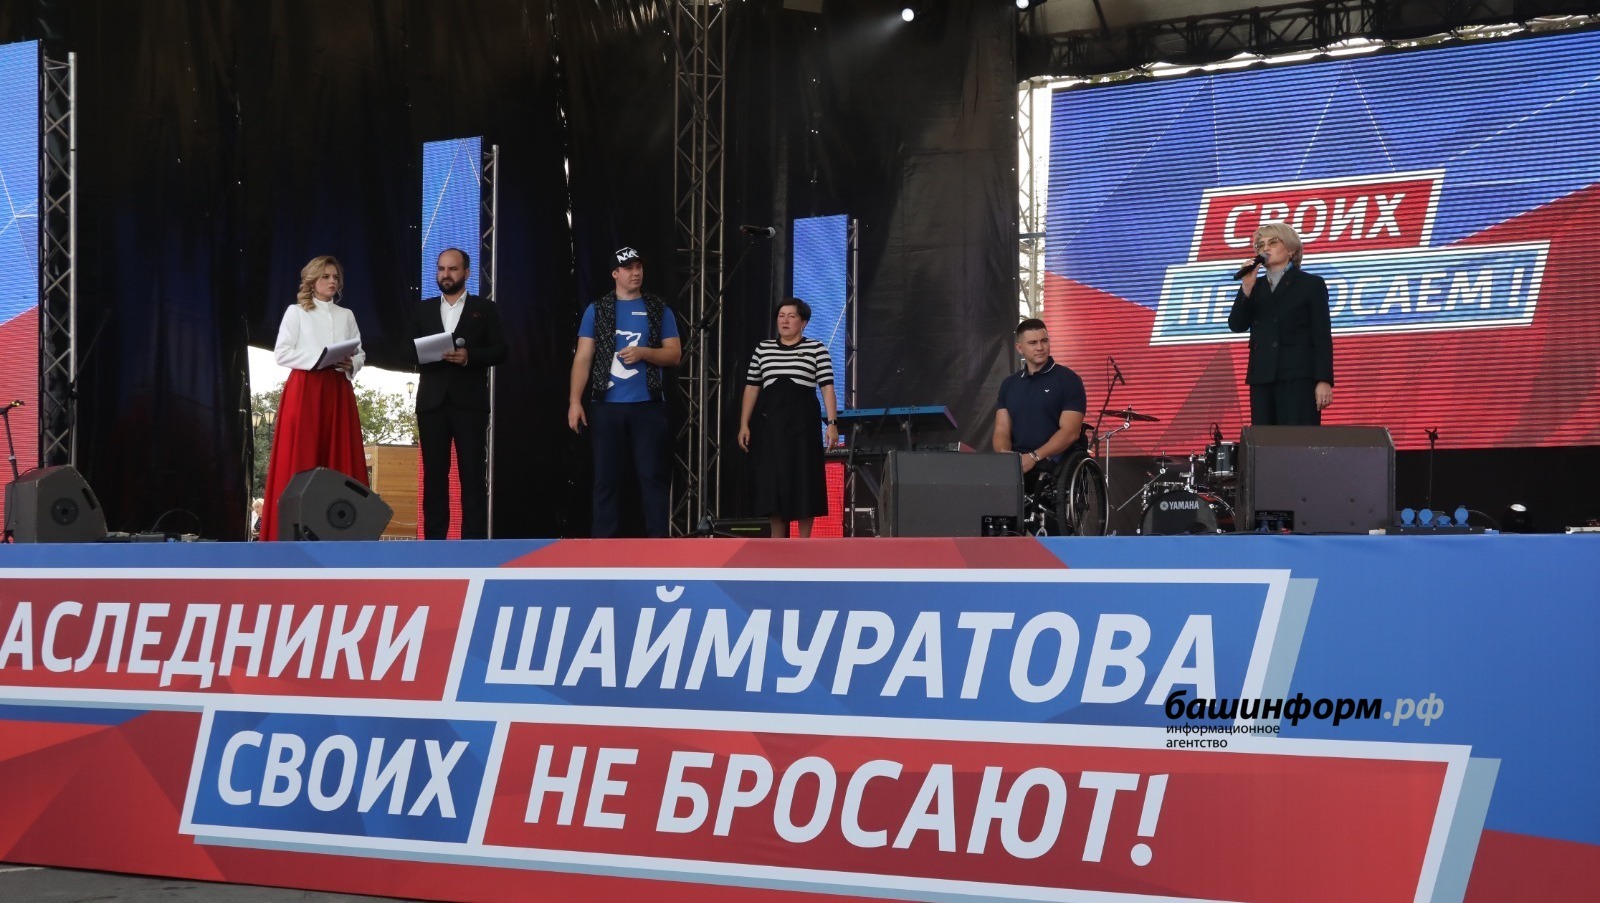 В Уфе тысячи людей собрались на митинг-концерт «Потомки Шаймуратова своих не бросают!»